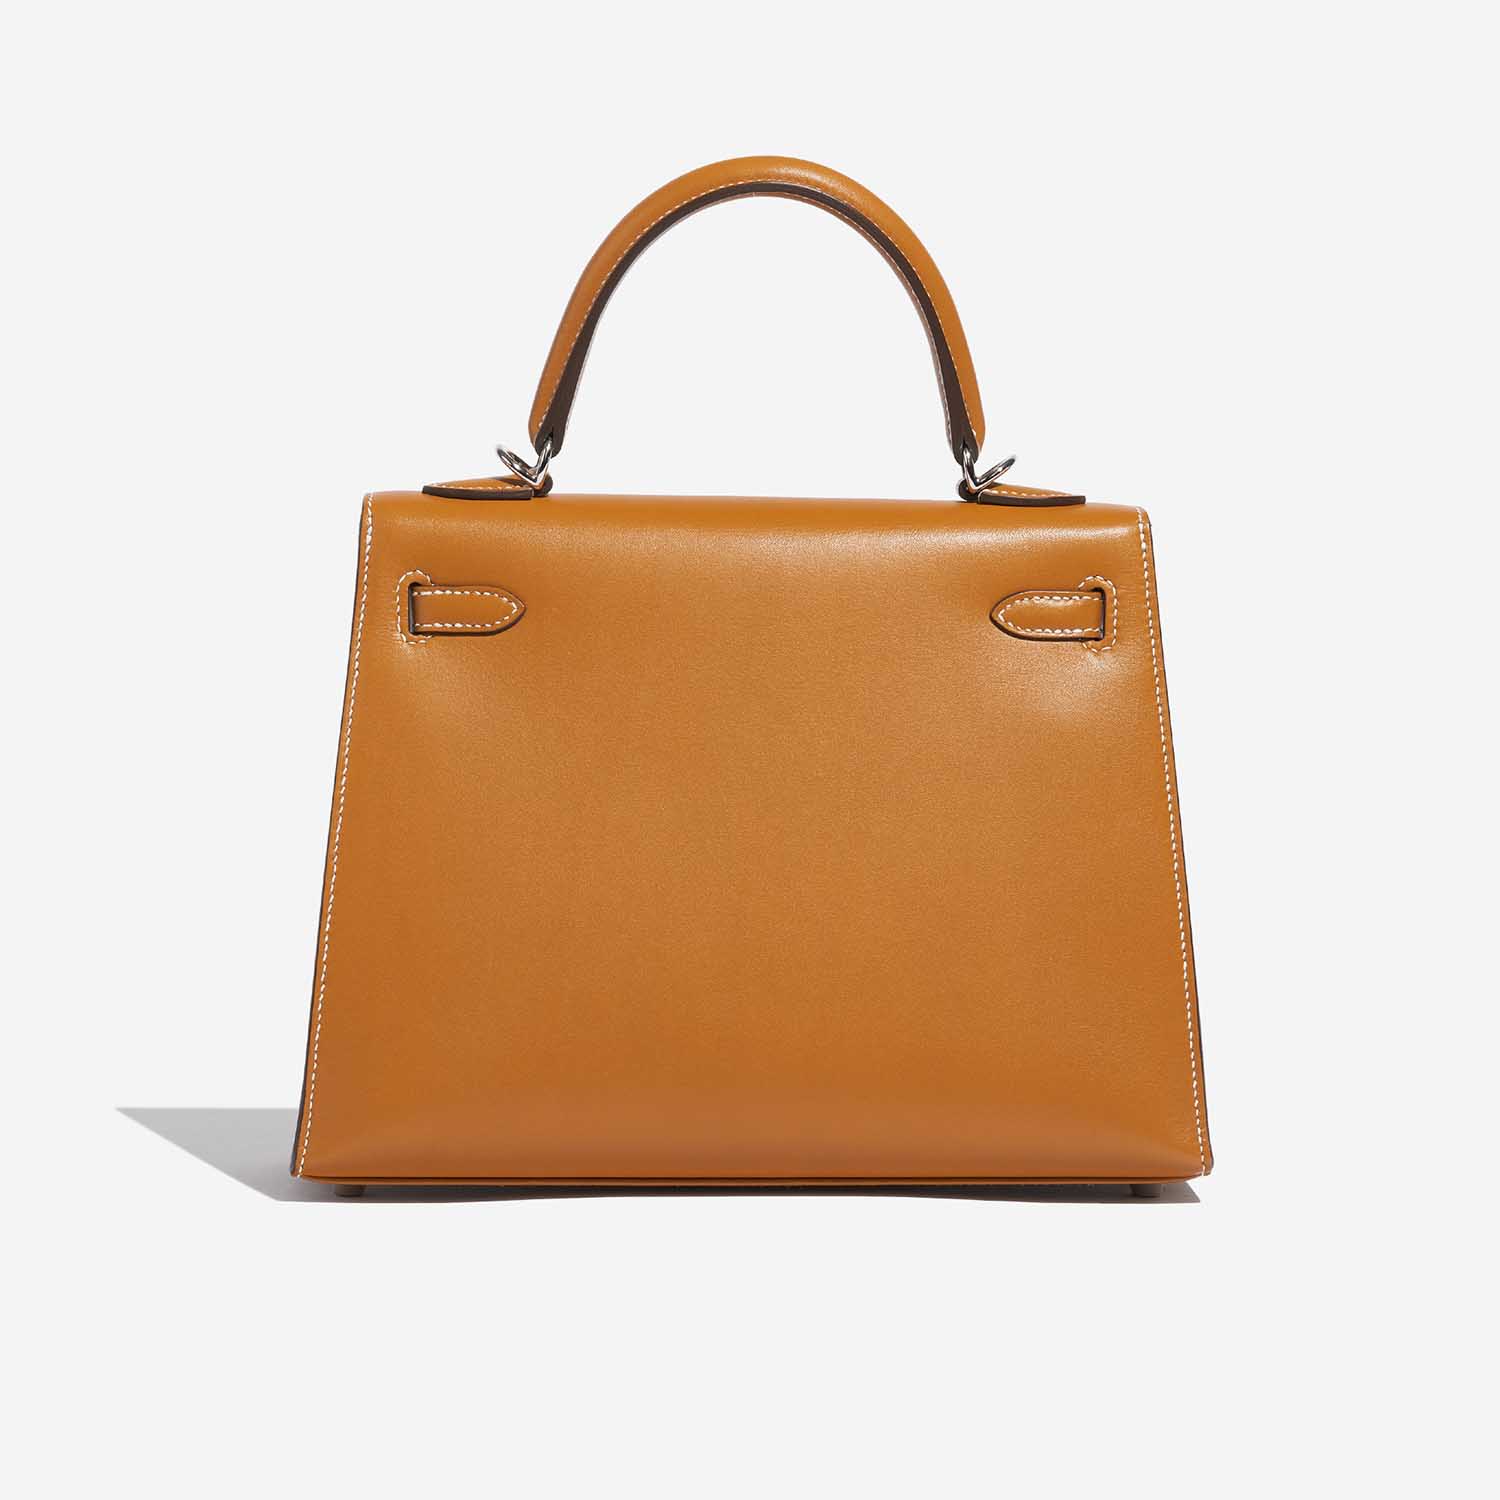 Pre-owned Hermès bag Kelly 25 Sable Butler Natural Brown Back | Sell your designer bag on Saclab.com